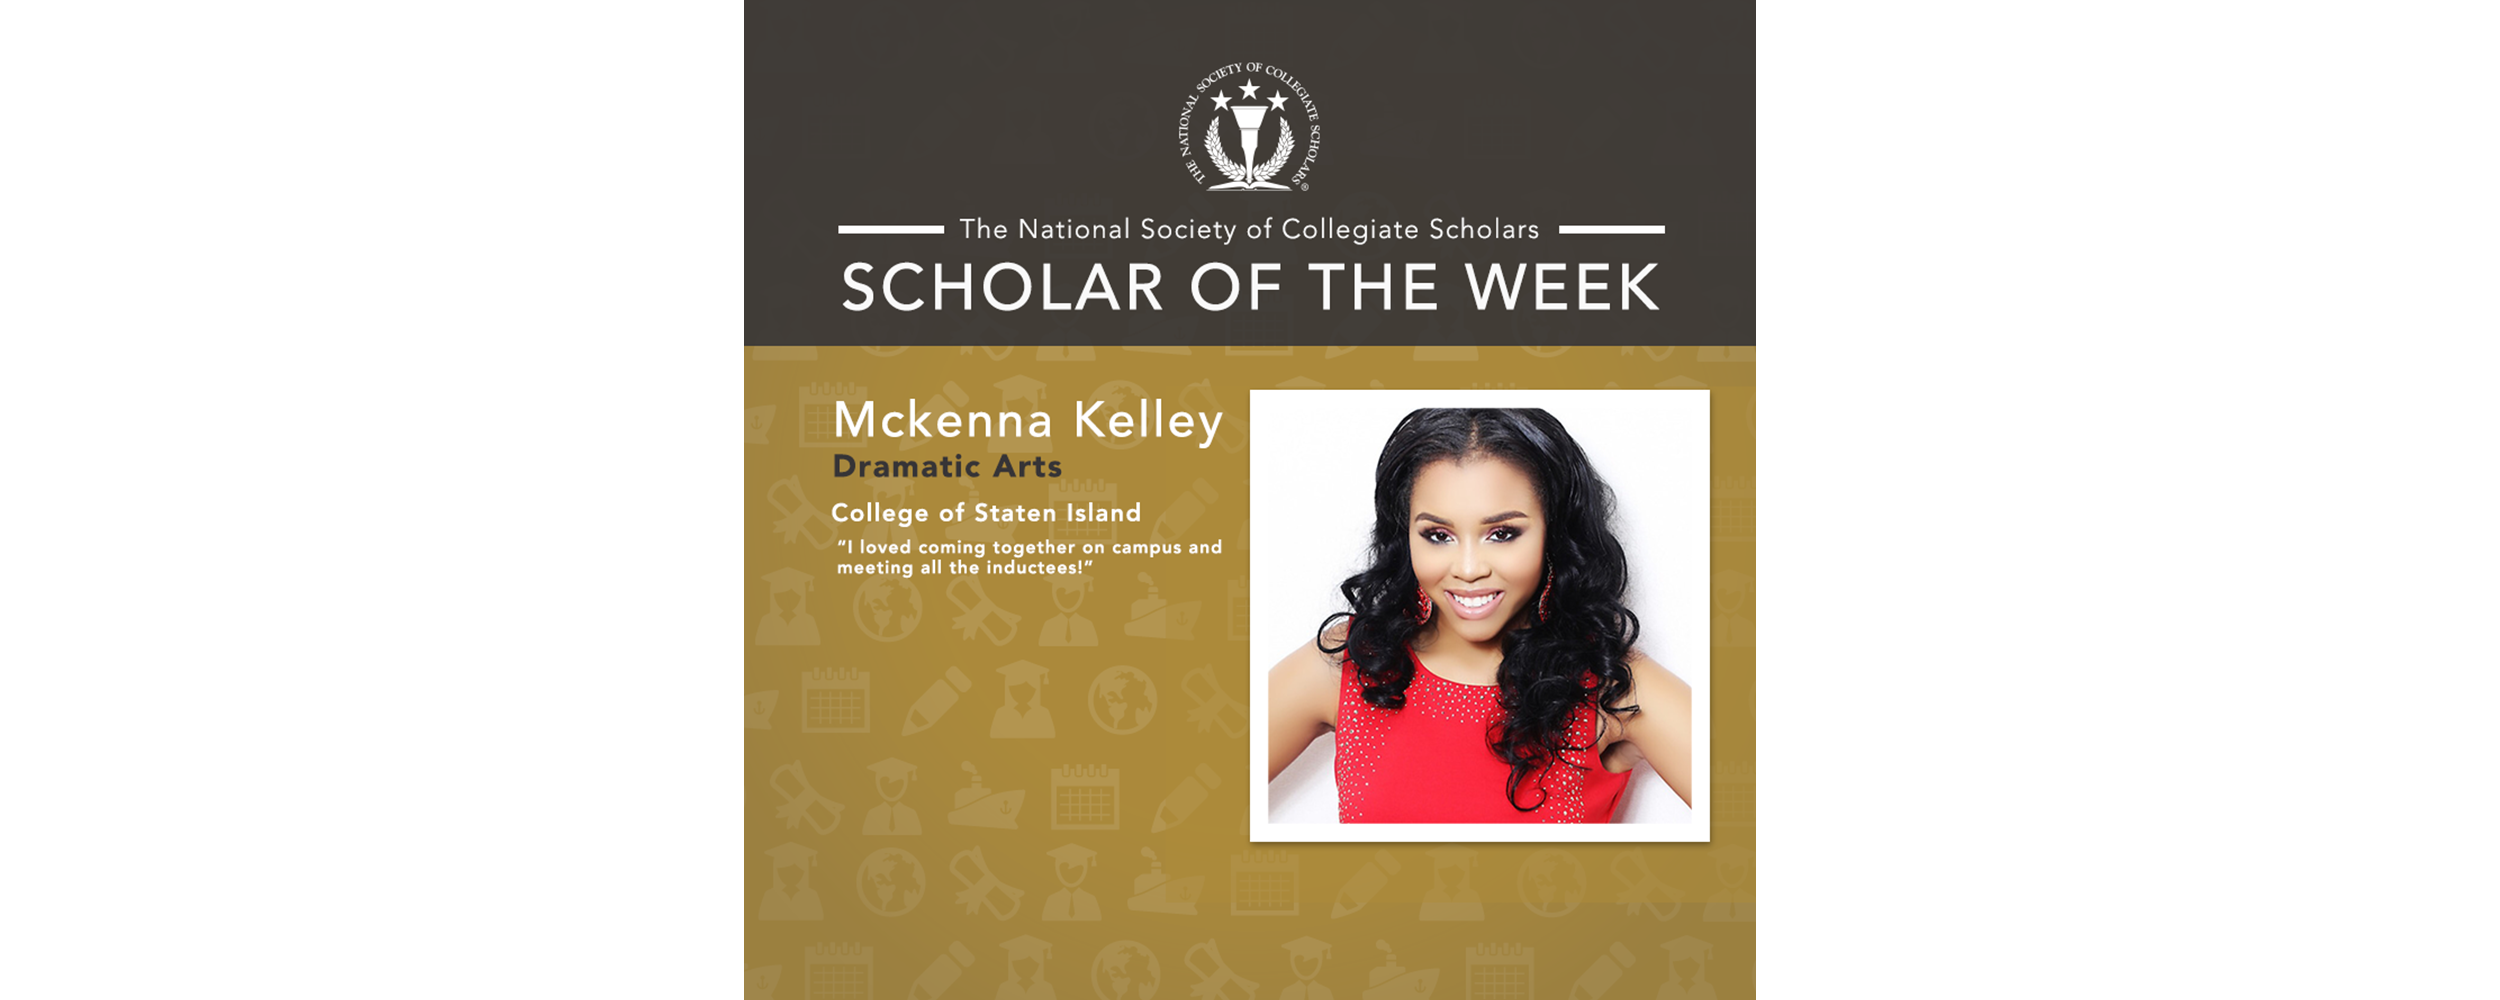 Scholar of the Week: Mckenna Kelley